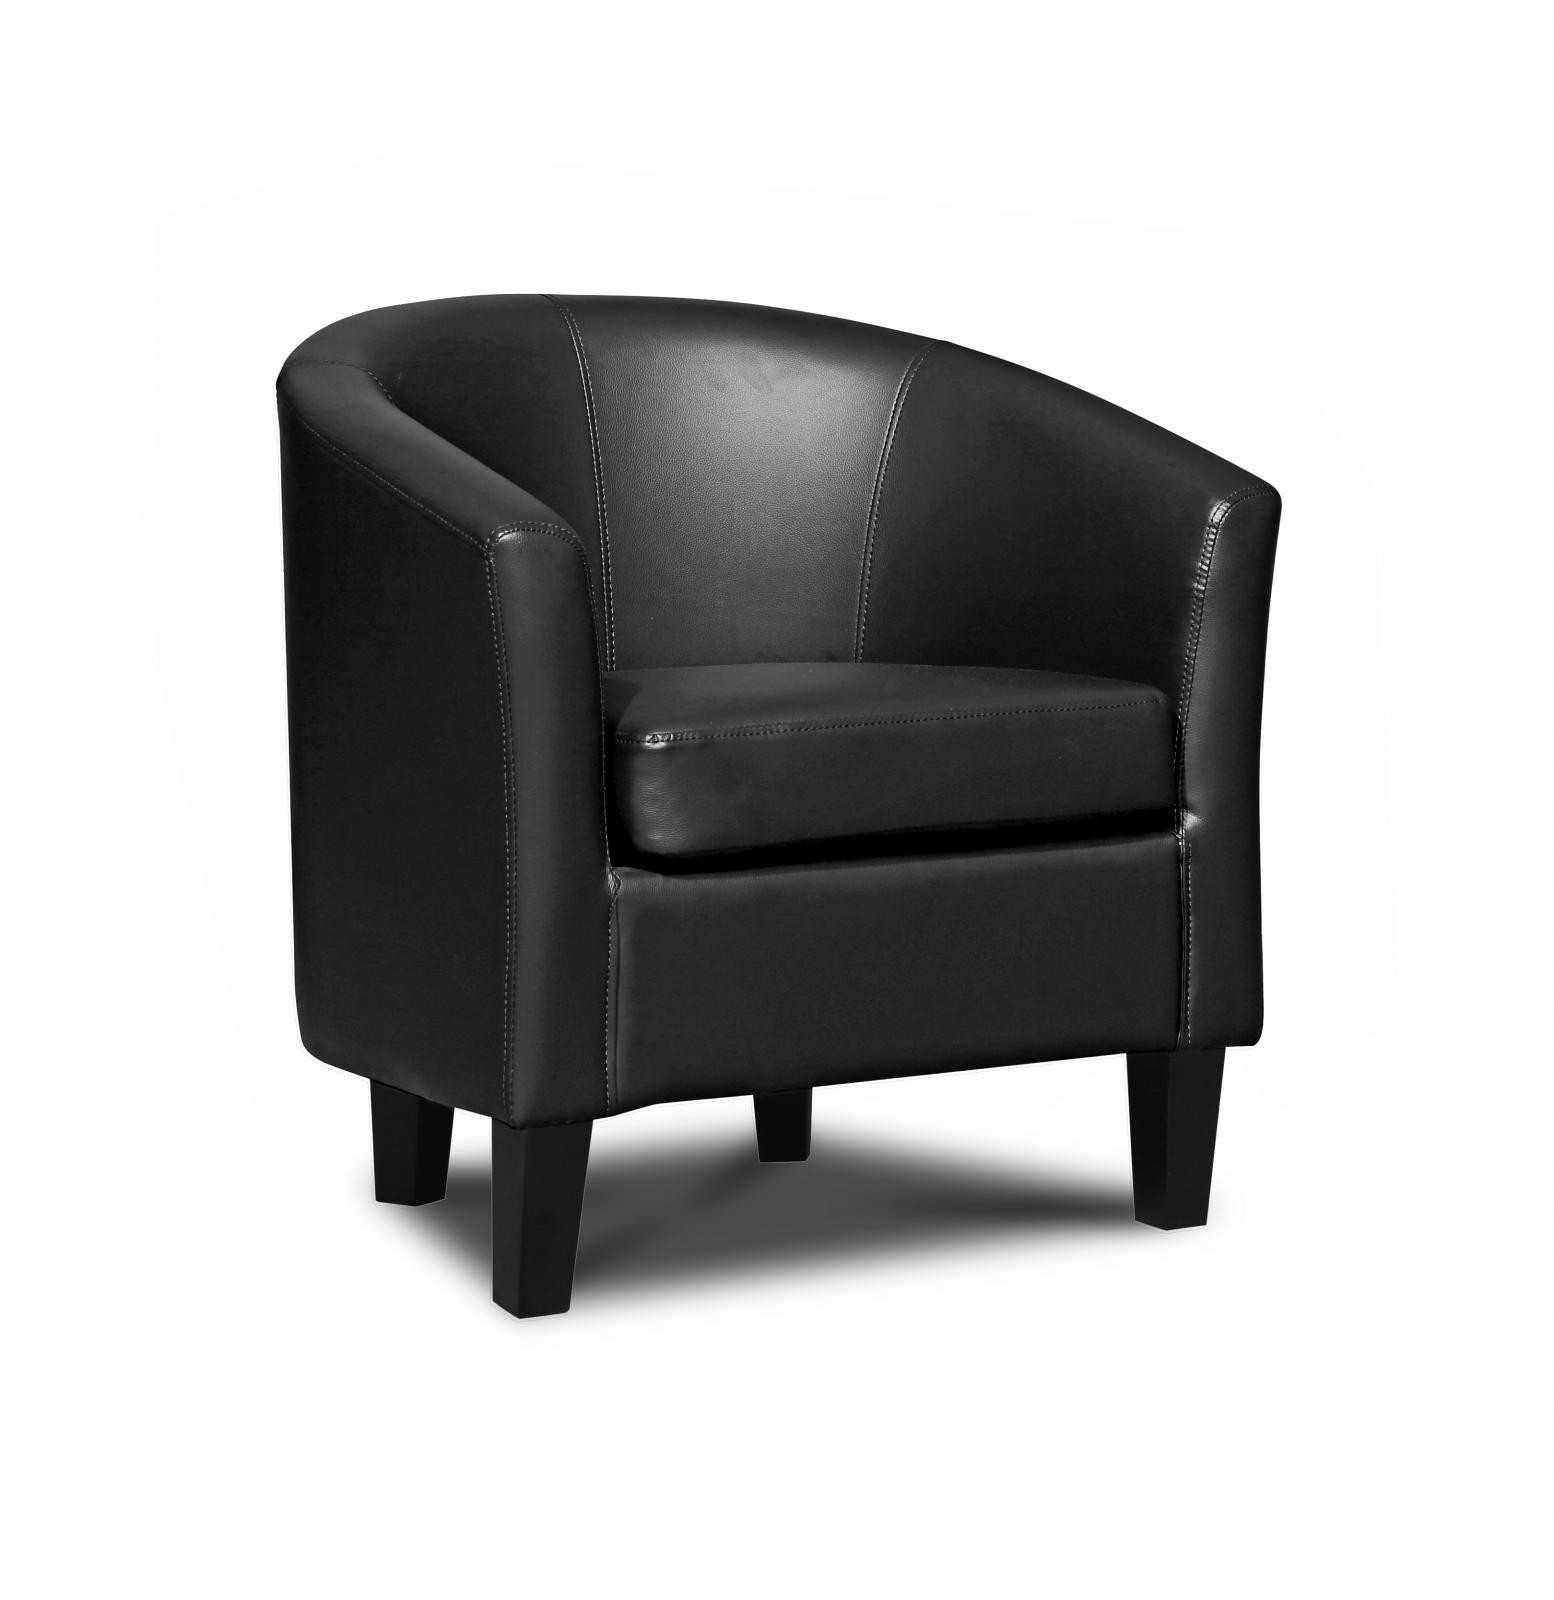 Denver faux leather tub chair grey ebay